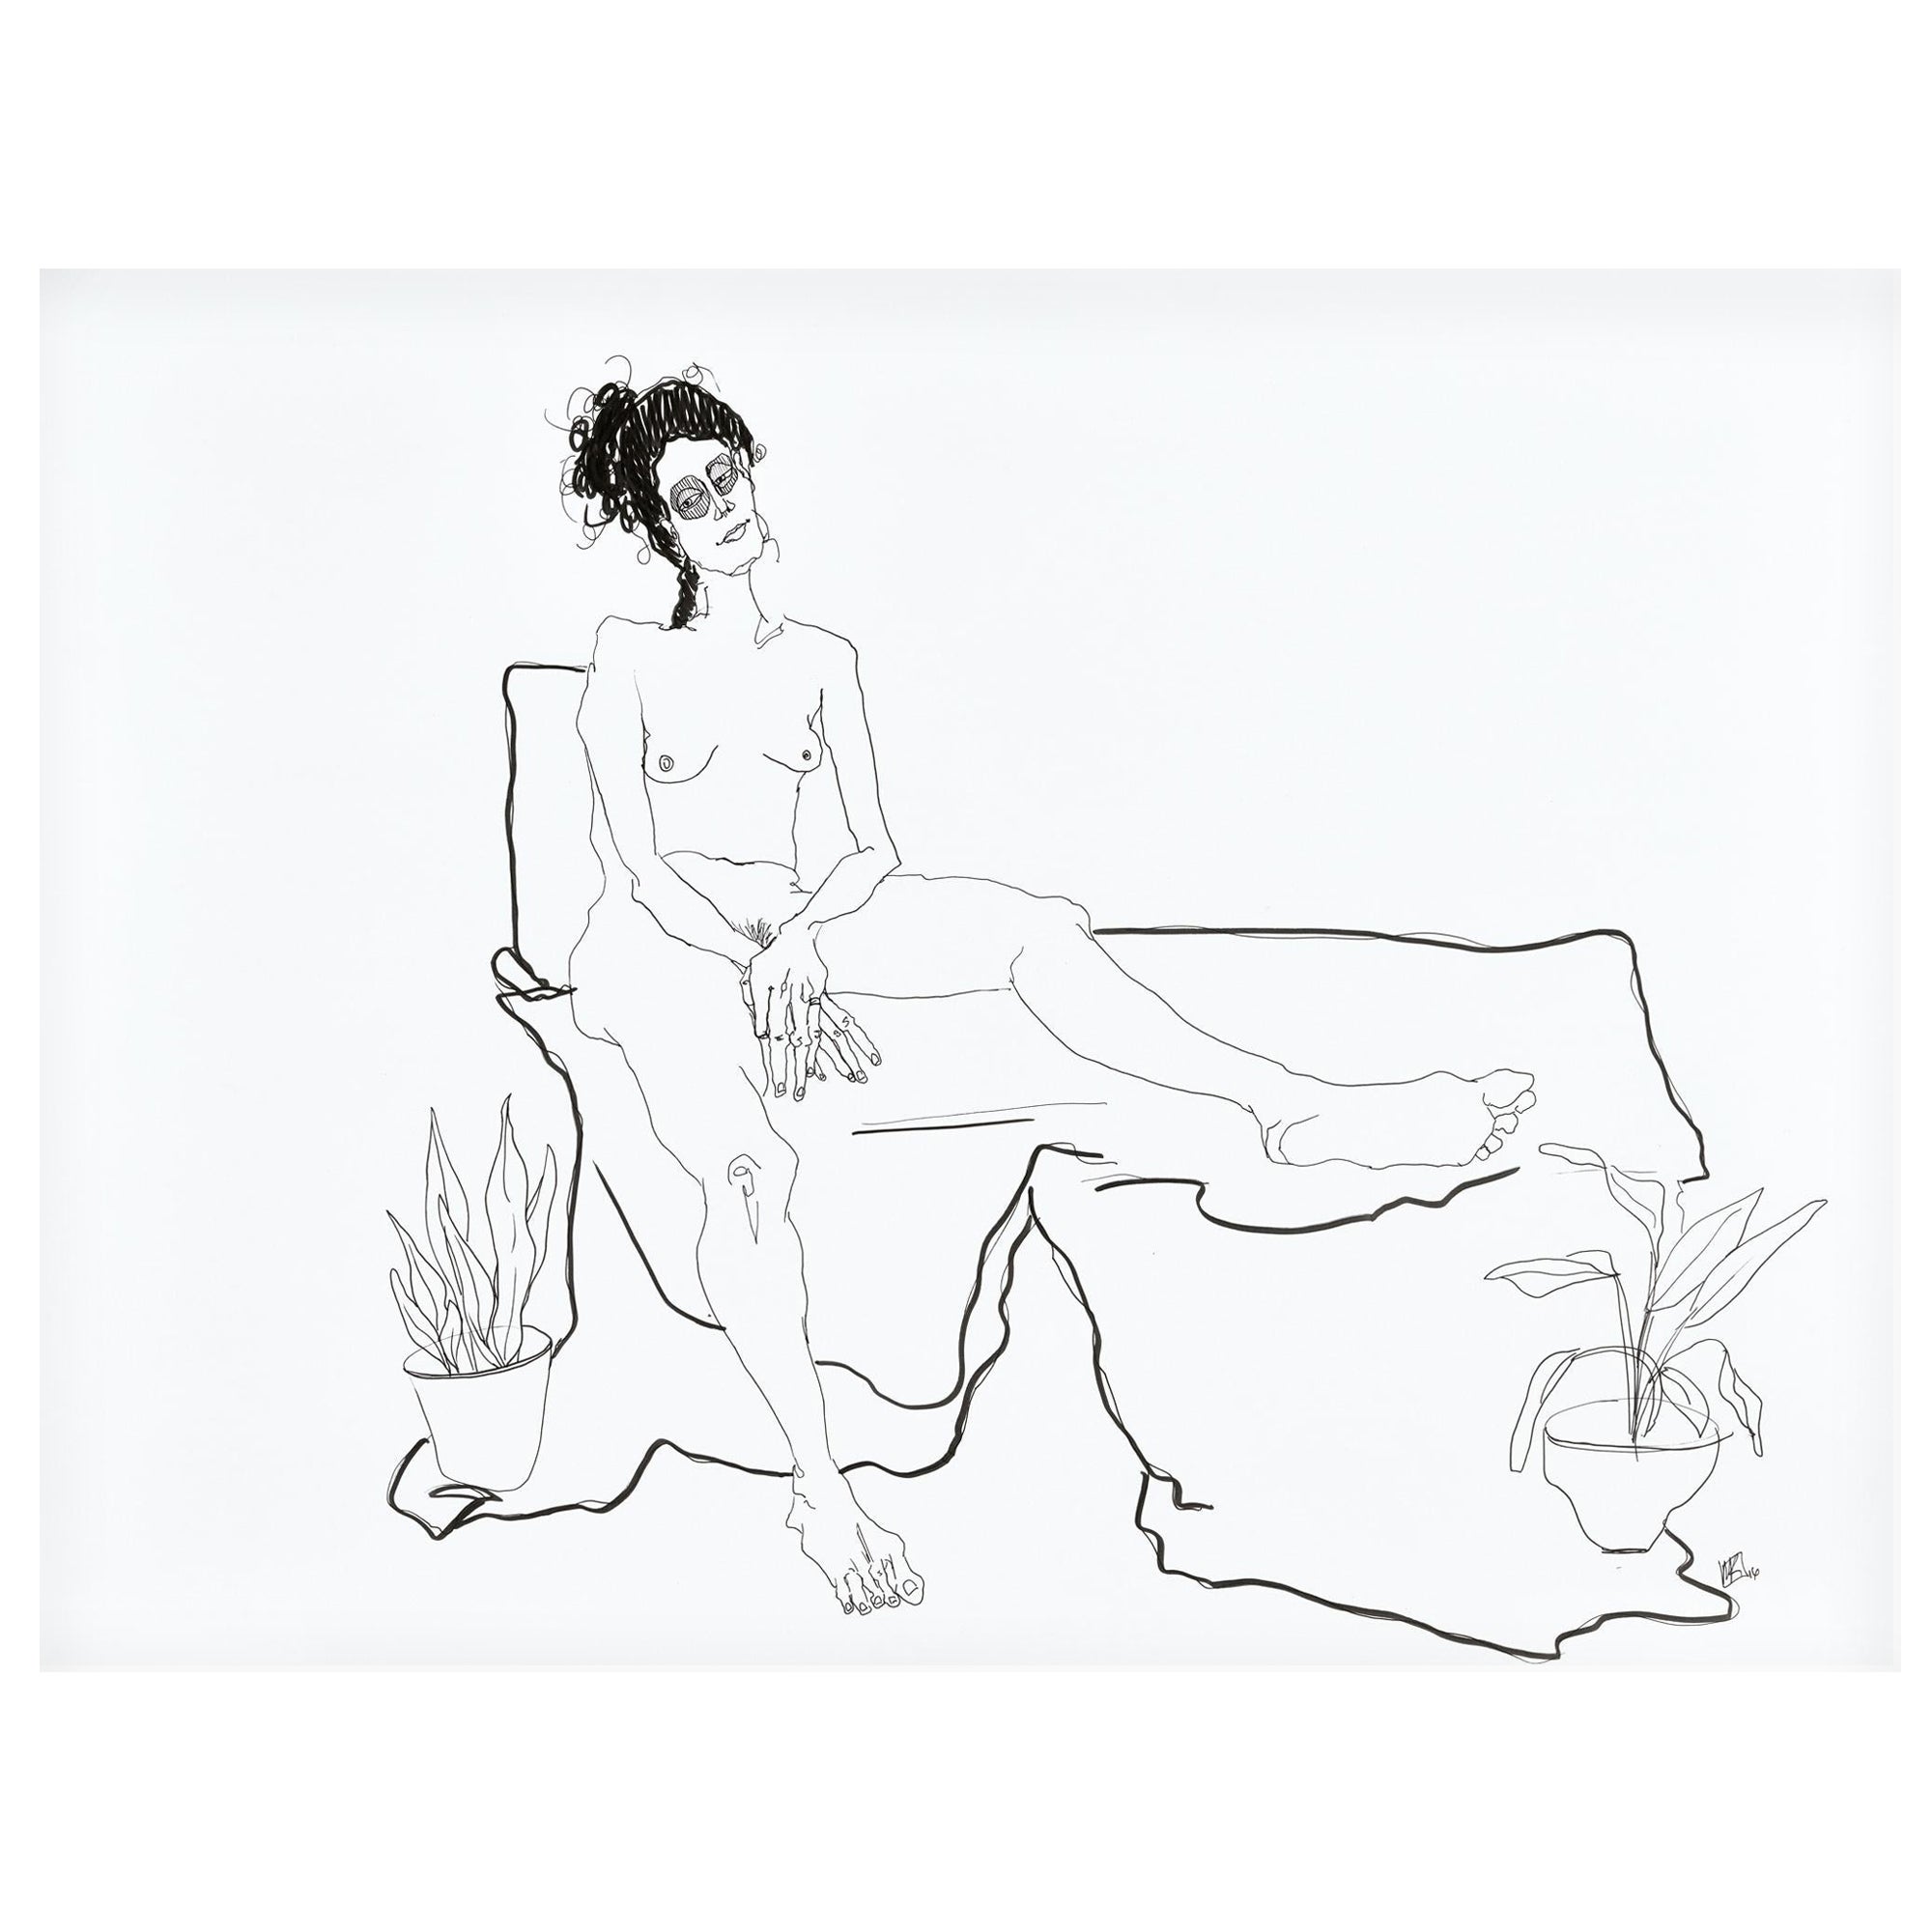 Mel Reese Nude – "Laurel Nr. 3", figurale Linienzeichnung einer nackten weiblichen Frau, die mit ihren Pflanzen liegt